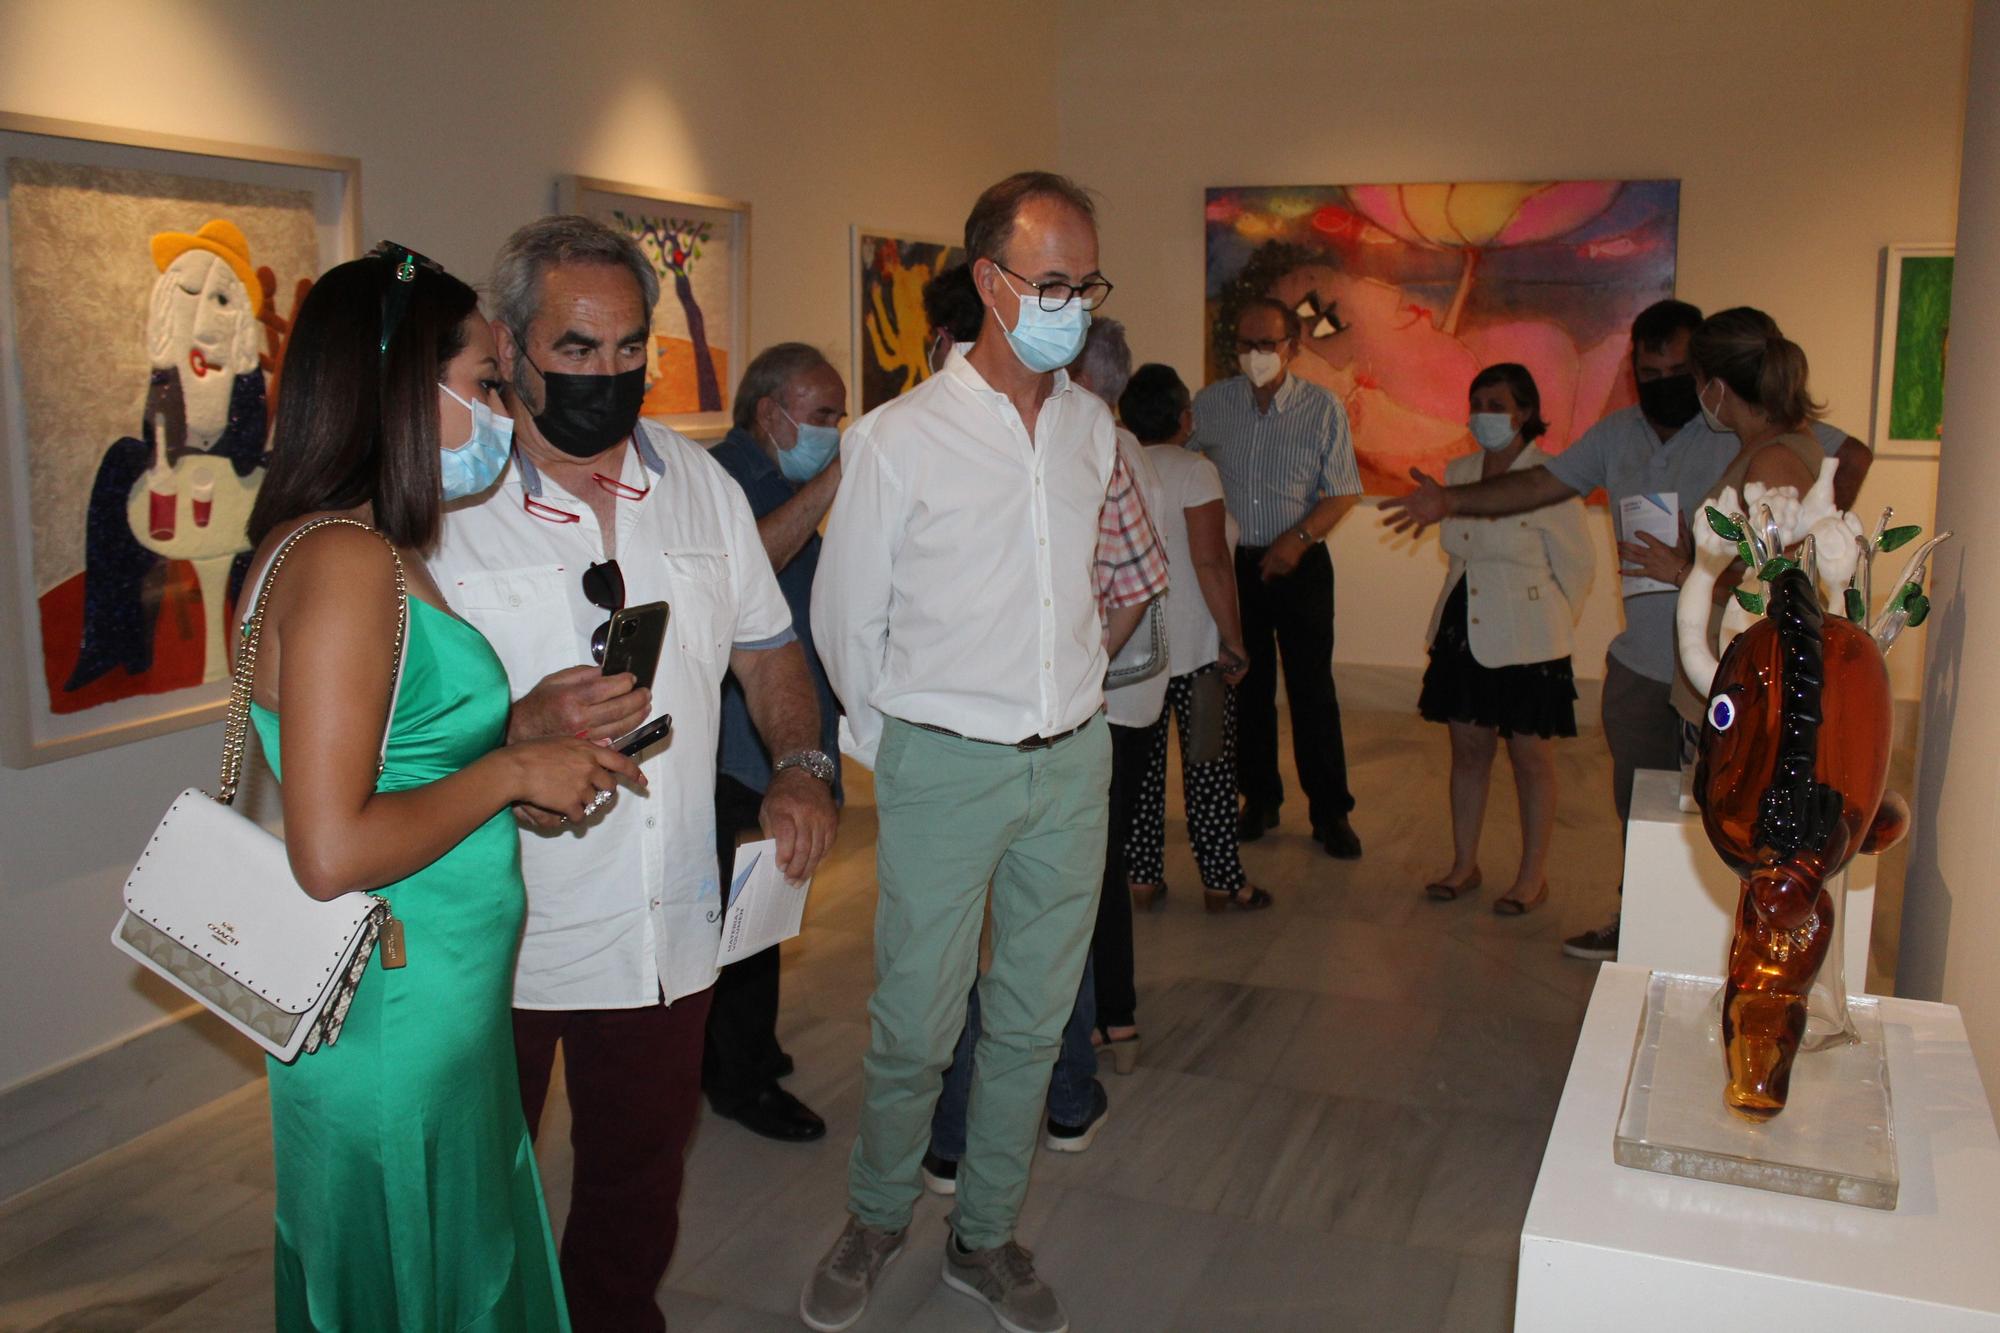 Ripollés vuelve a exponer su arte en Castellón tras 40 años